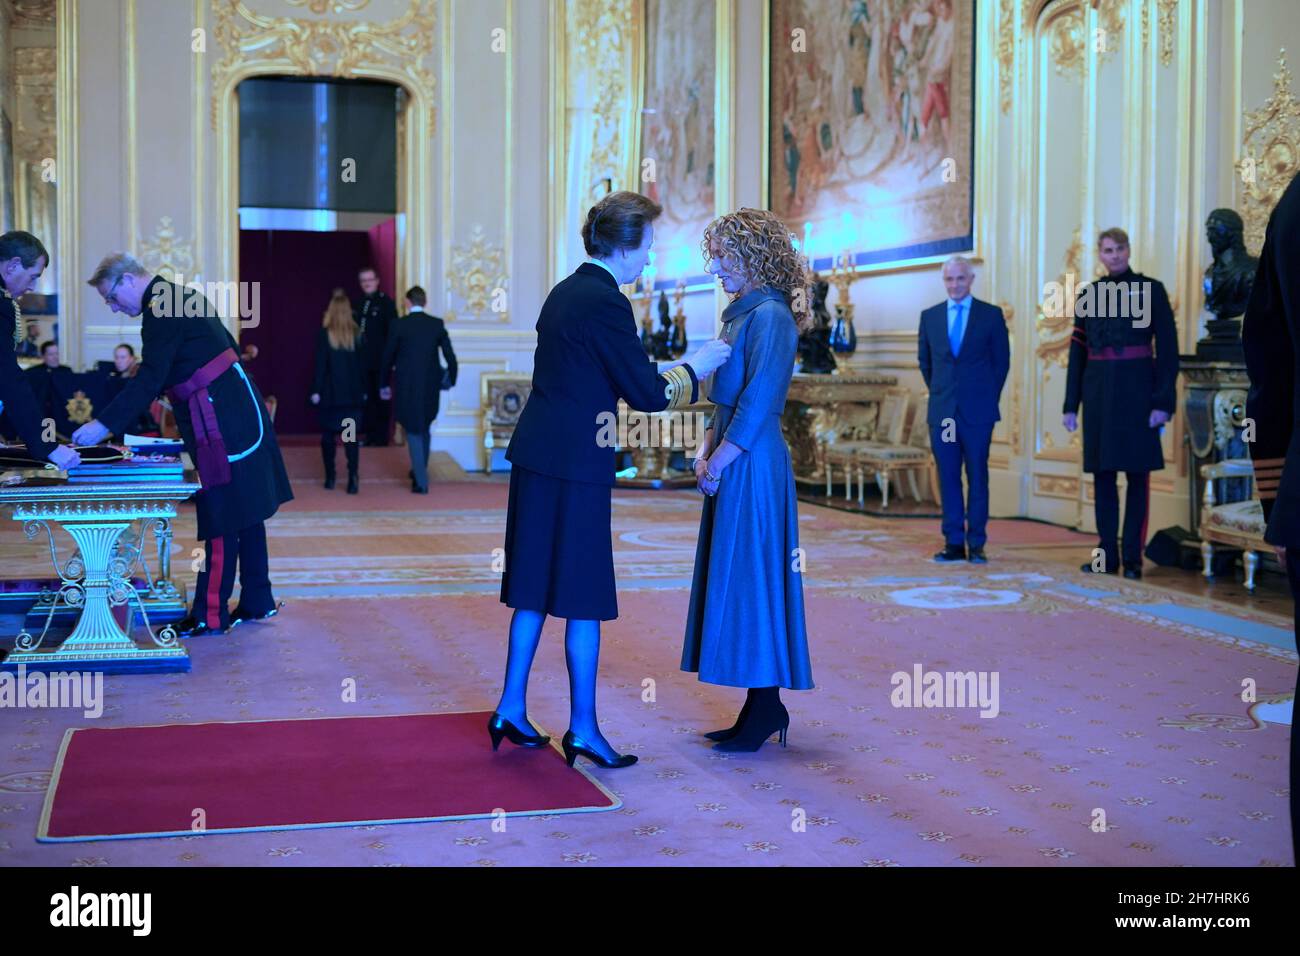 Kelly Hoppen, de Londres, est fait CBE (commandant de l'ordre de l'Empire britannique) par la princesse Royal au château de Windsor.Date de la photo: Mardi 23 novembre 2021. Banque D'Images